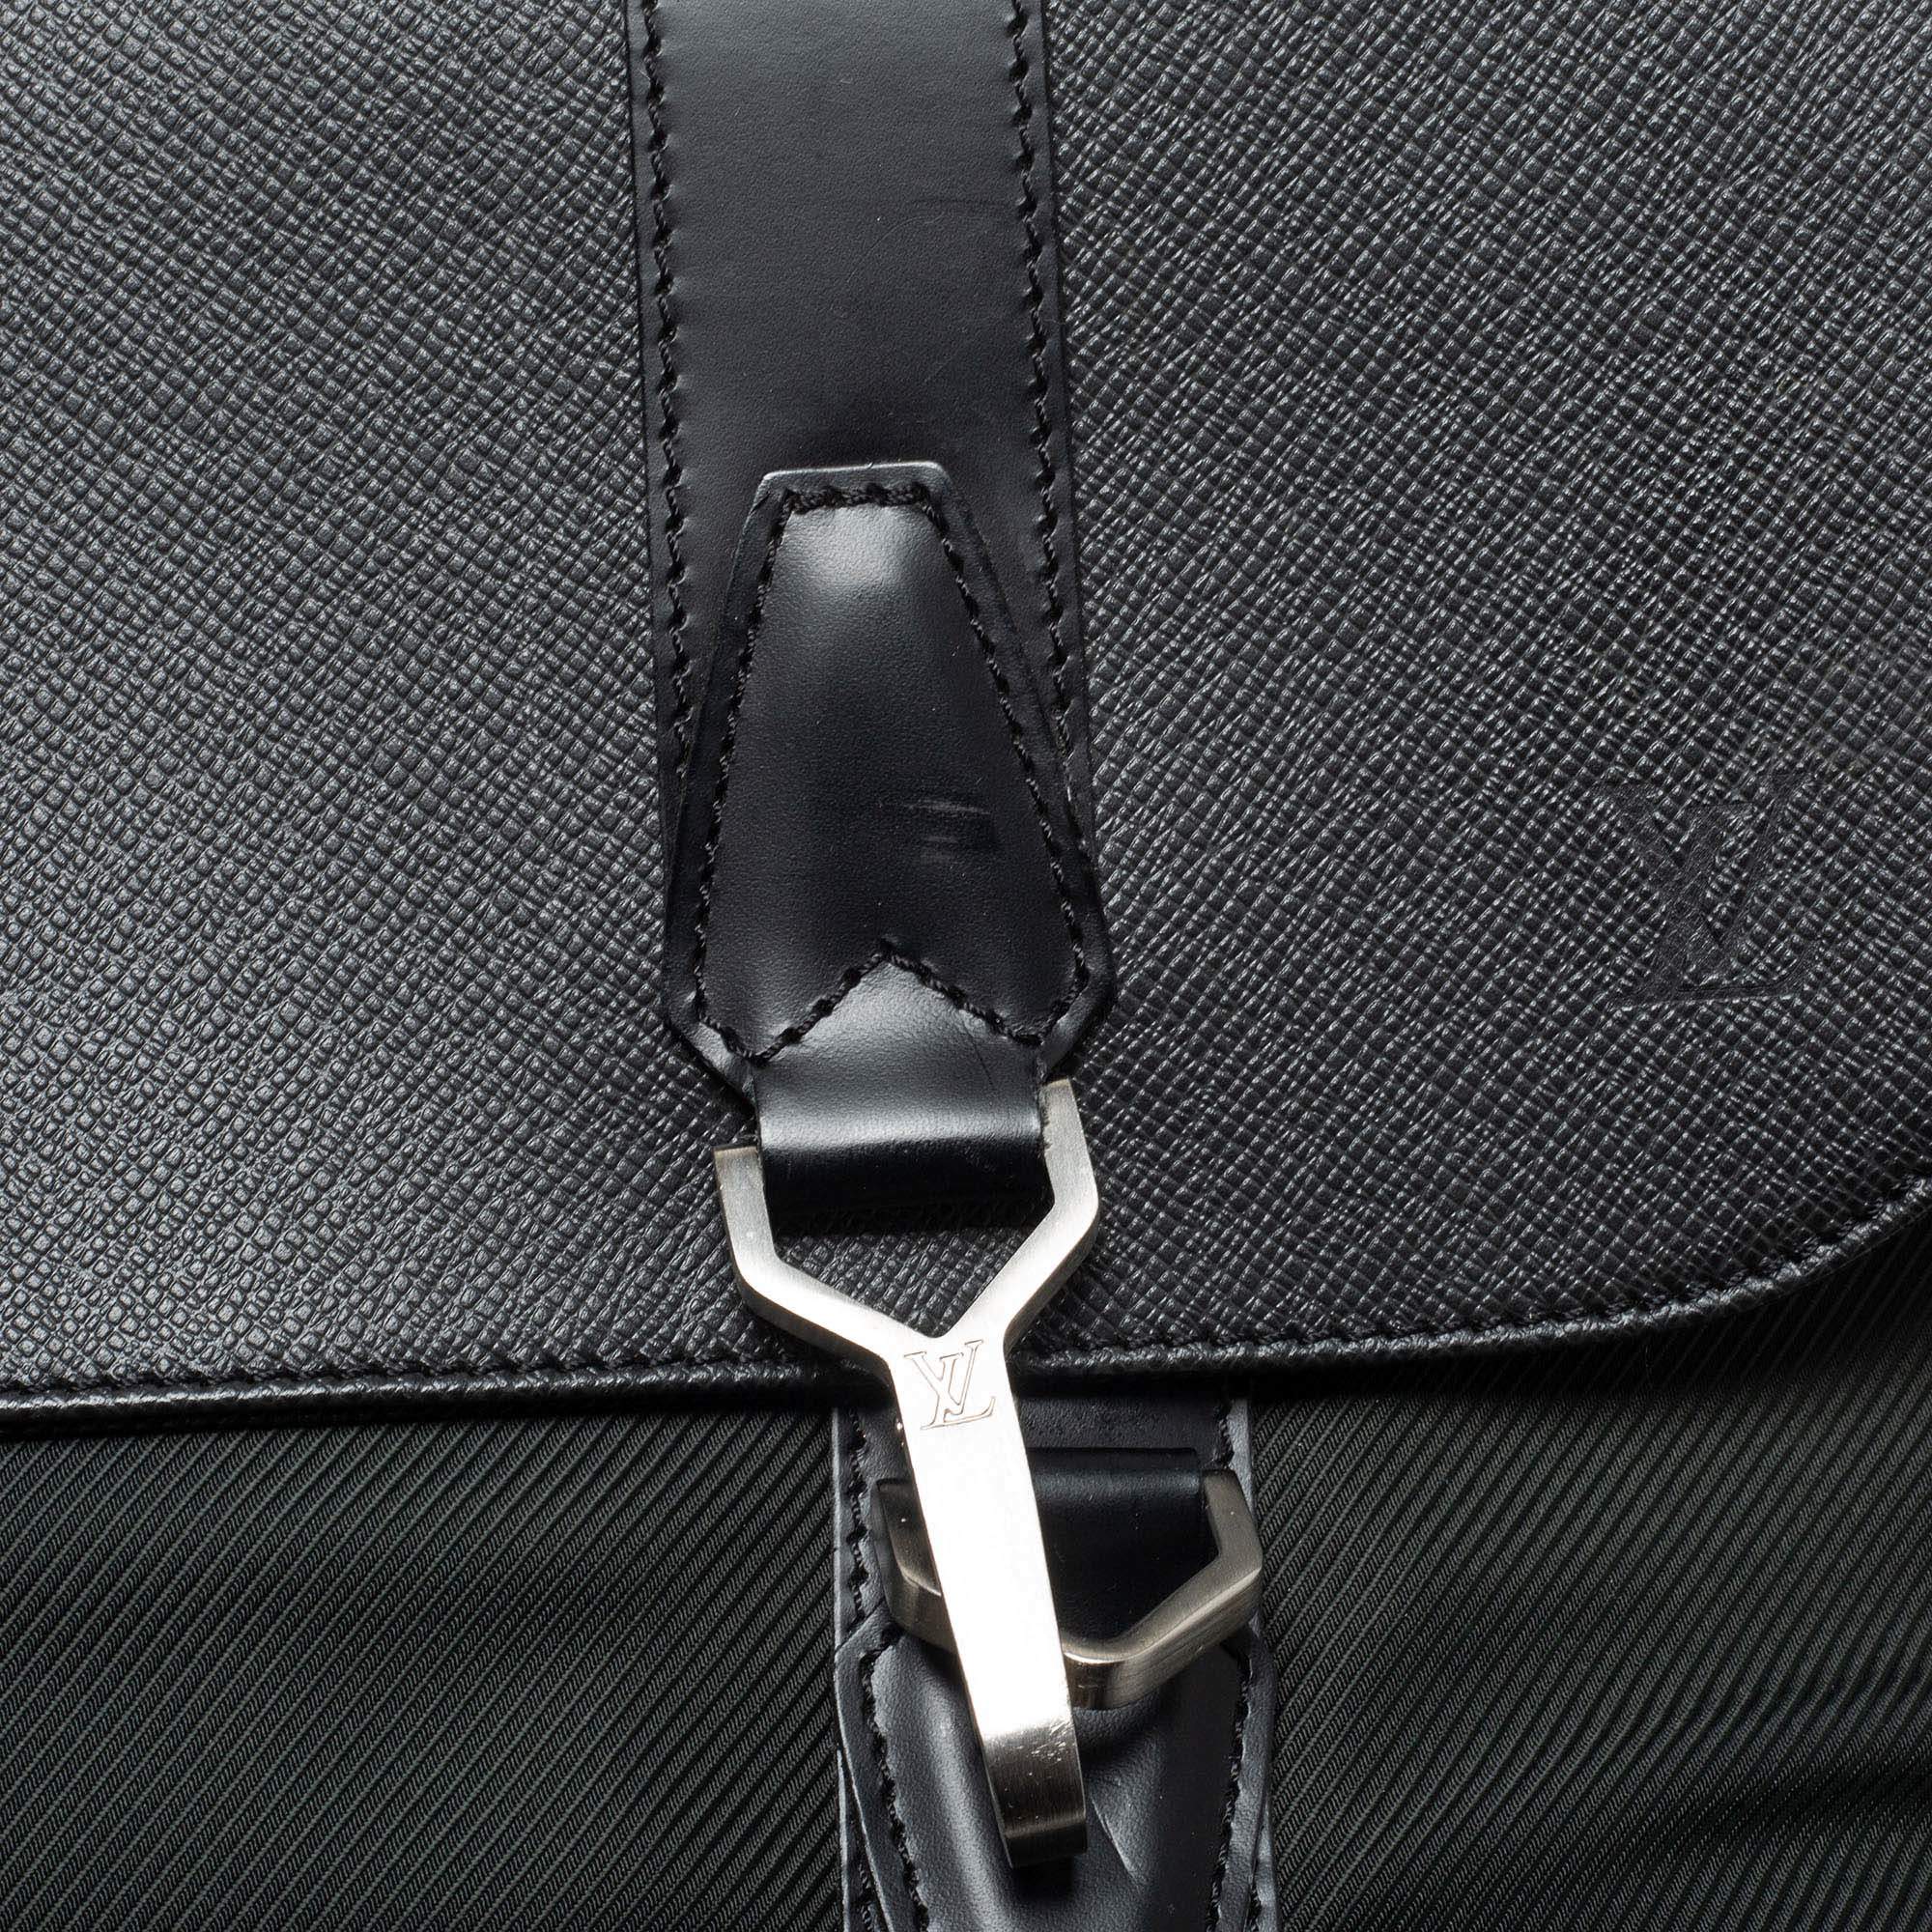 Louis Vuitton Noir/Vert Taiga Portable Gibeciere Garment Travel